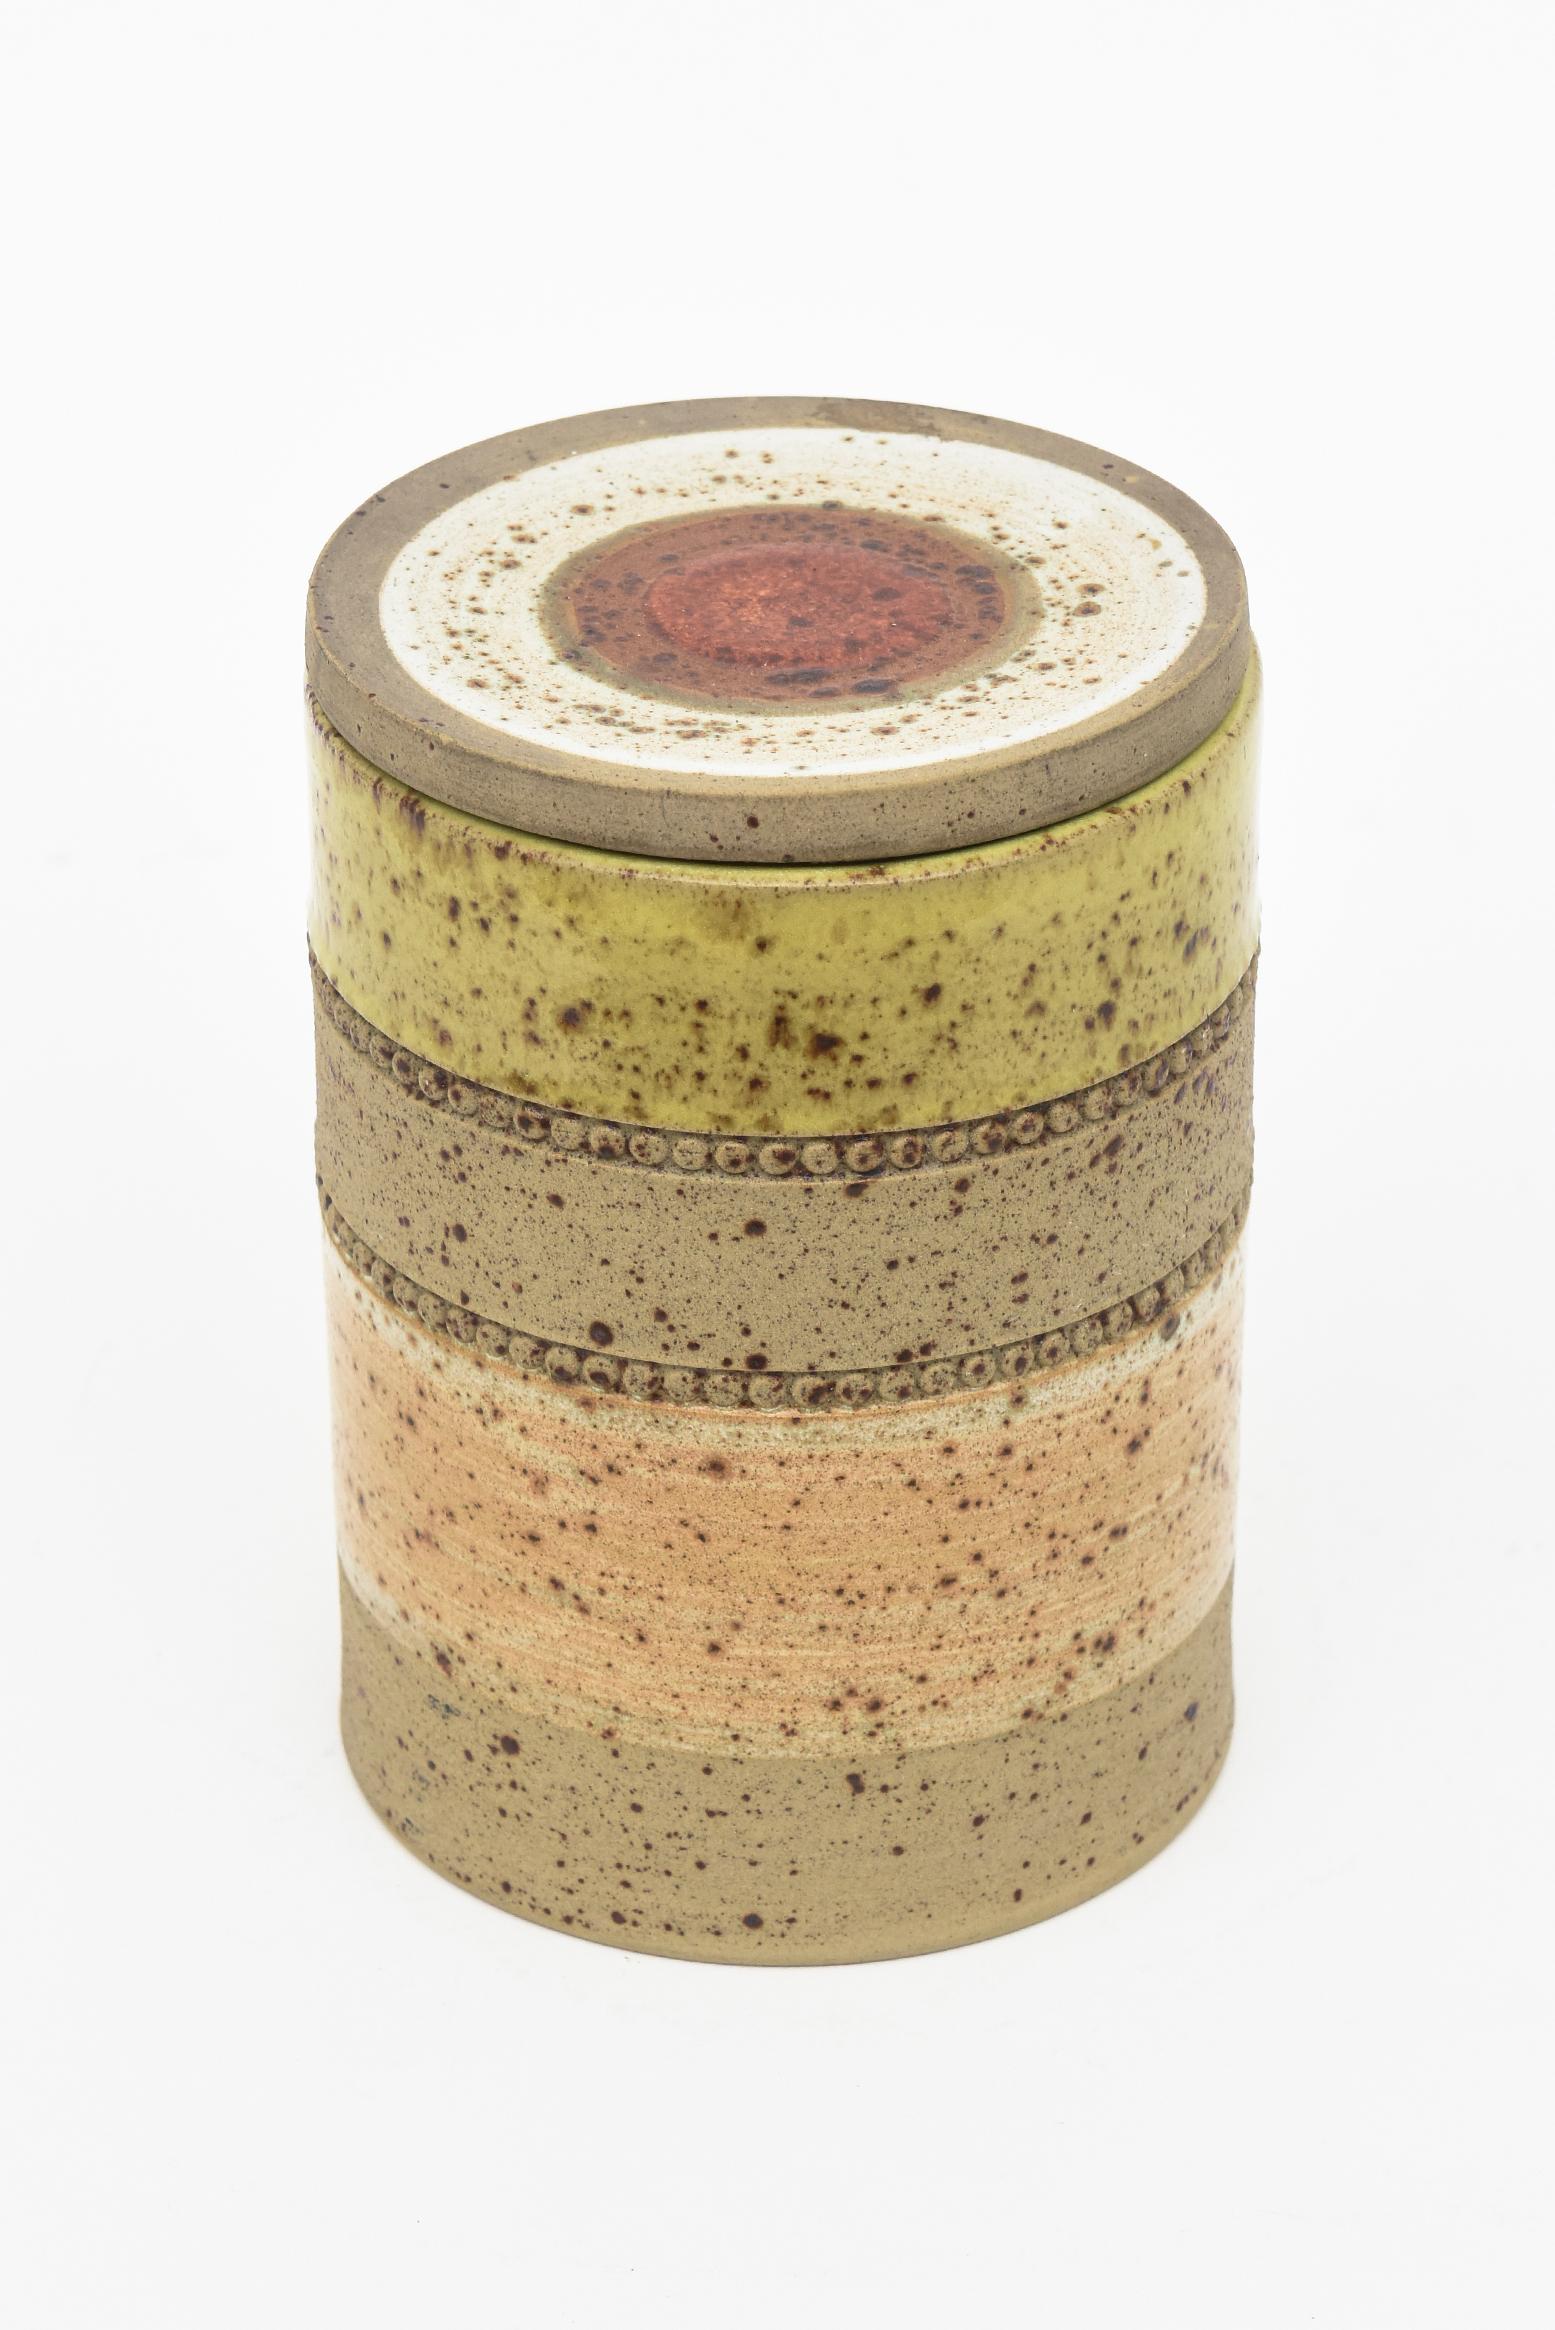 Diese schöne runde Keramikdose mit Deckel ist mit Denby Made in England gekennzeichnet. Es ist eine Kombination aus glasierten und unglasierten Farben von breiten Streifen mit 2 Perlenreihen. Das Oberteil hat ein rotes Bullauge in der Mitte, das mit